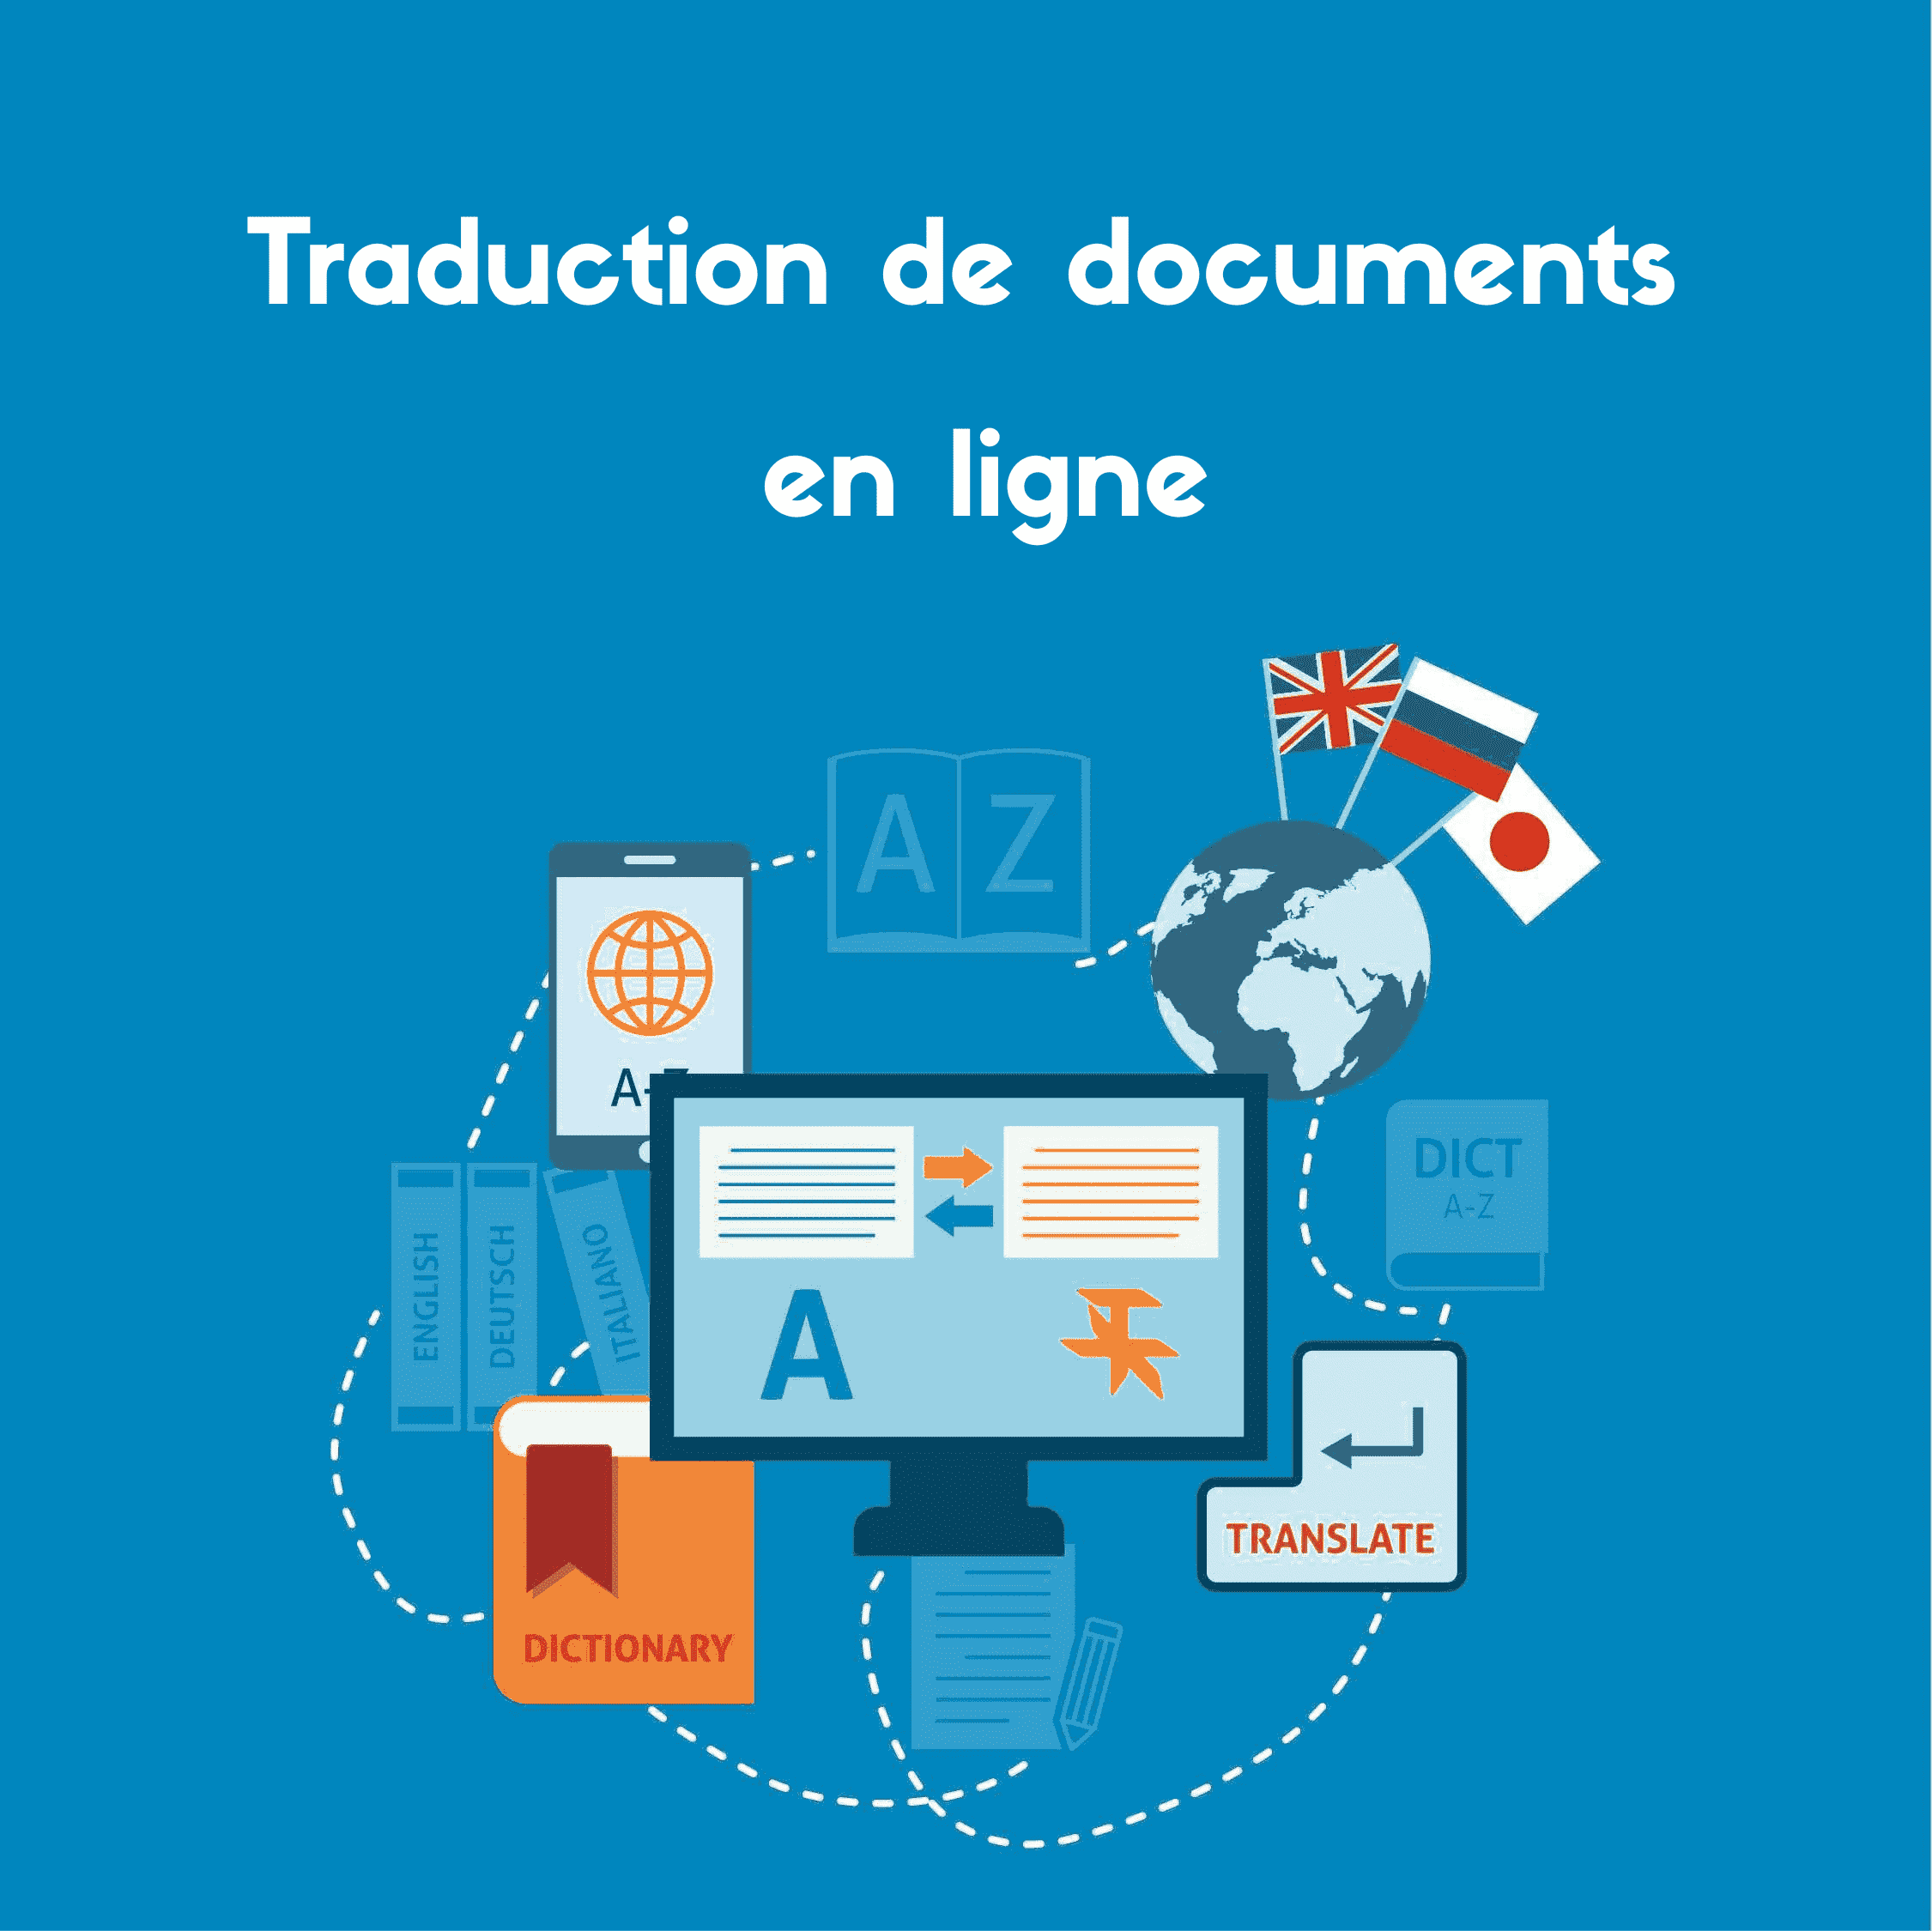 Cette image vous donne une idée du fonctionnement de l'outil de traduction de documents en ligne pour traduire votre document.